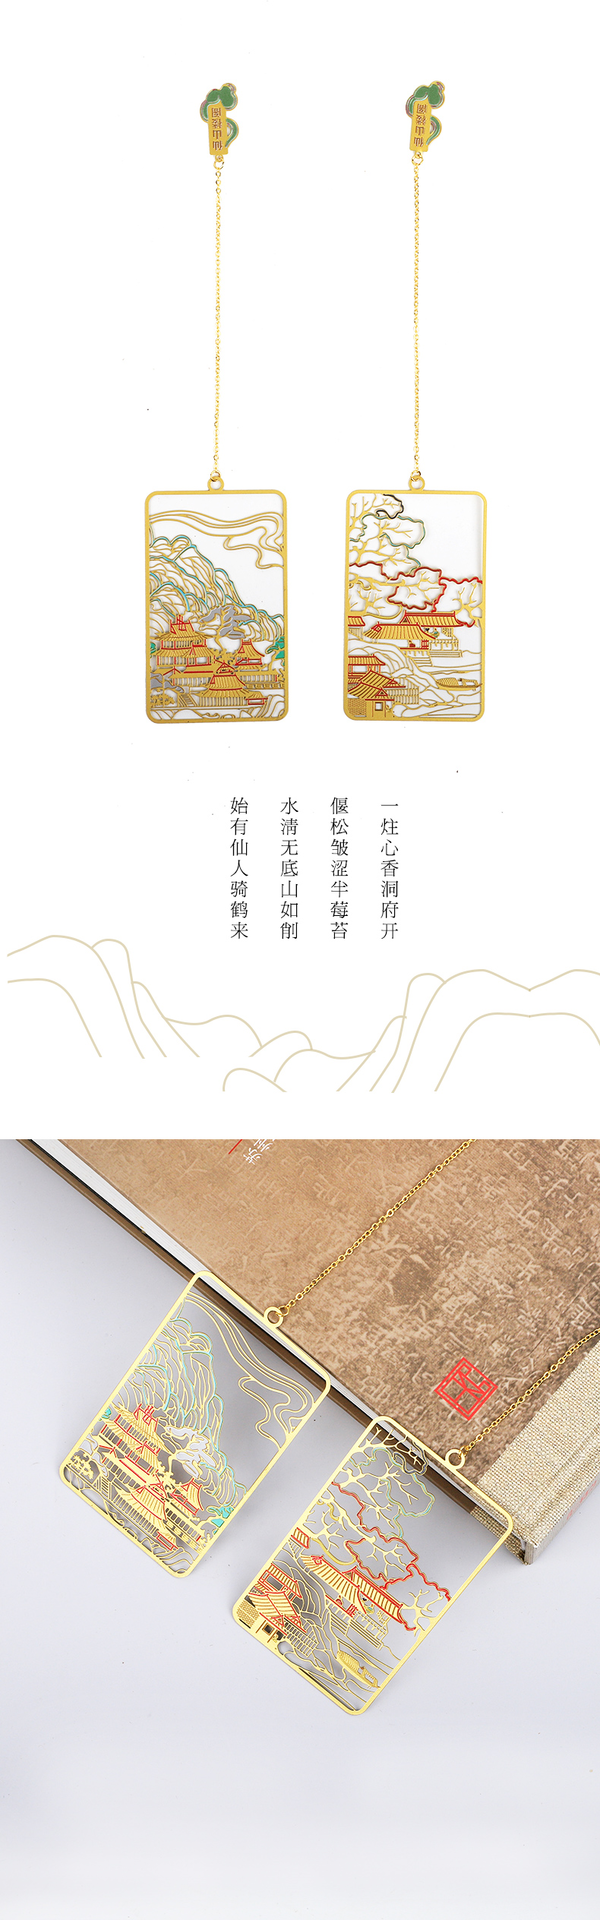 苏州博物馆 仙山楼阁书签 7.7×.4.7cm 19.4cm 黄铜 创意文艺金属夹古风铜制书签